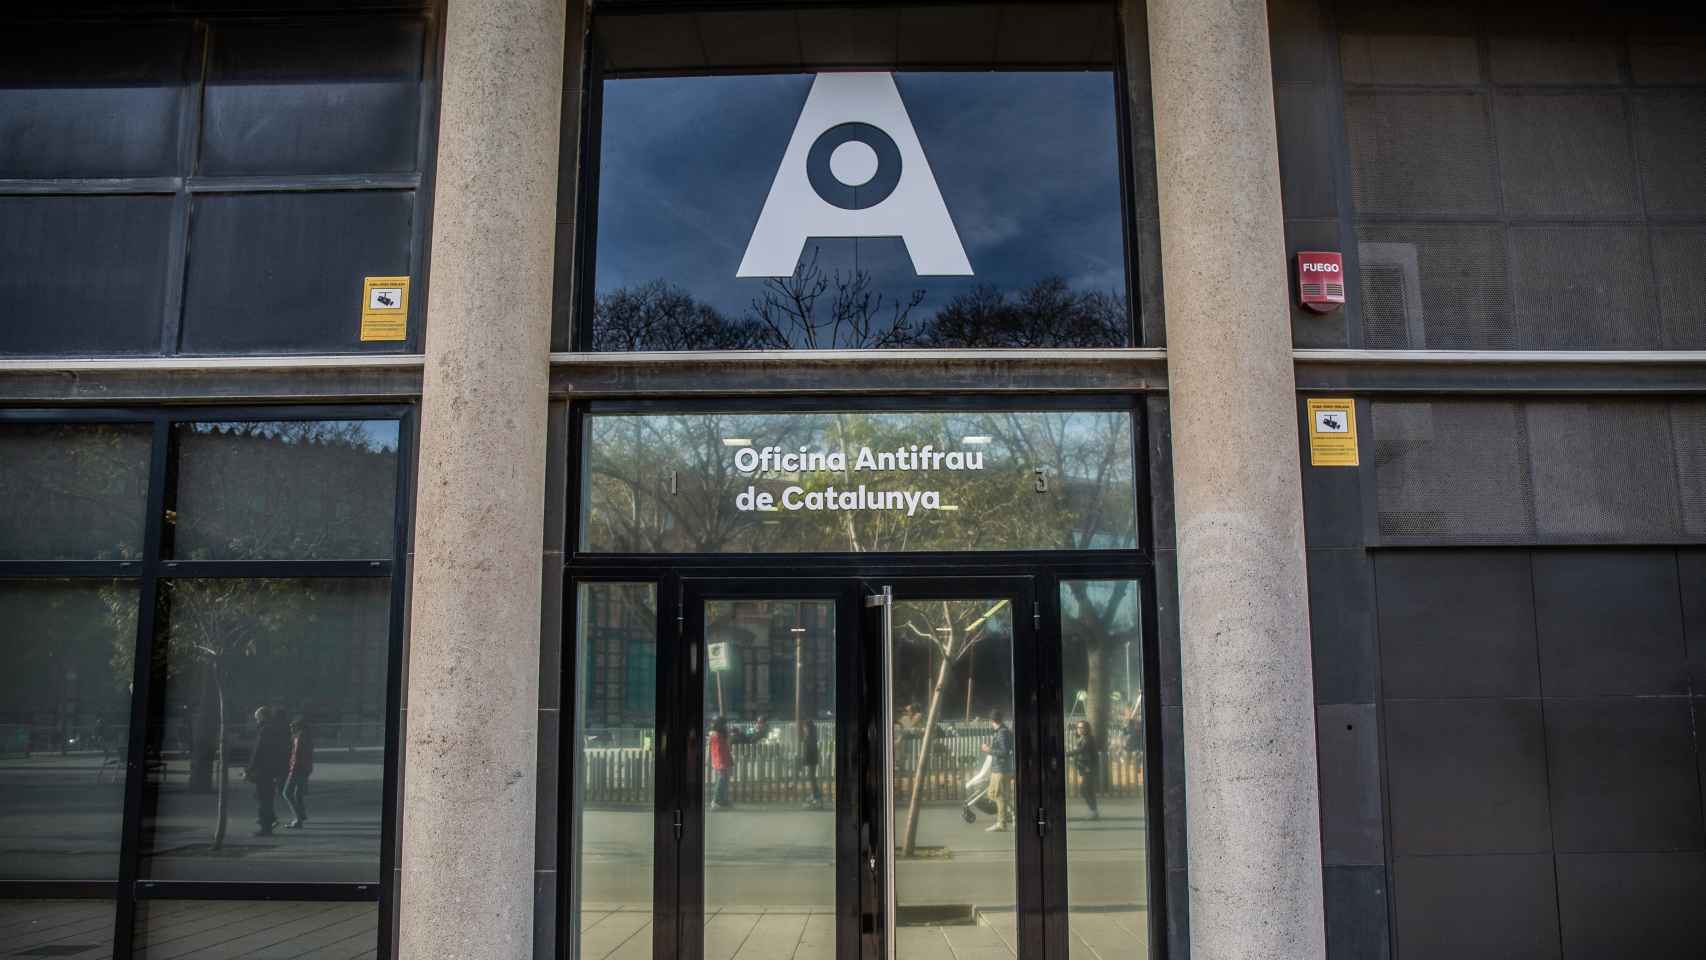 Puerta principal de la Oficina Antifraude de la Generalitat de Catalunya